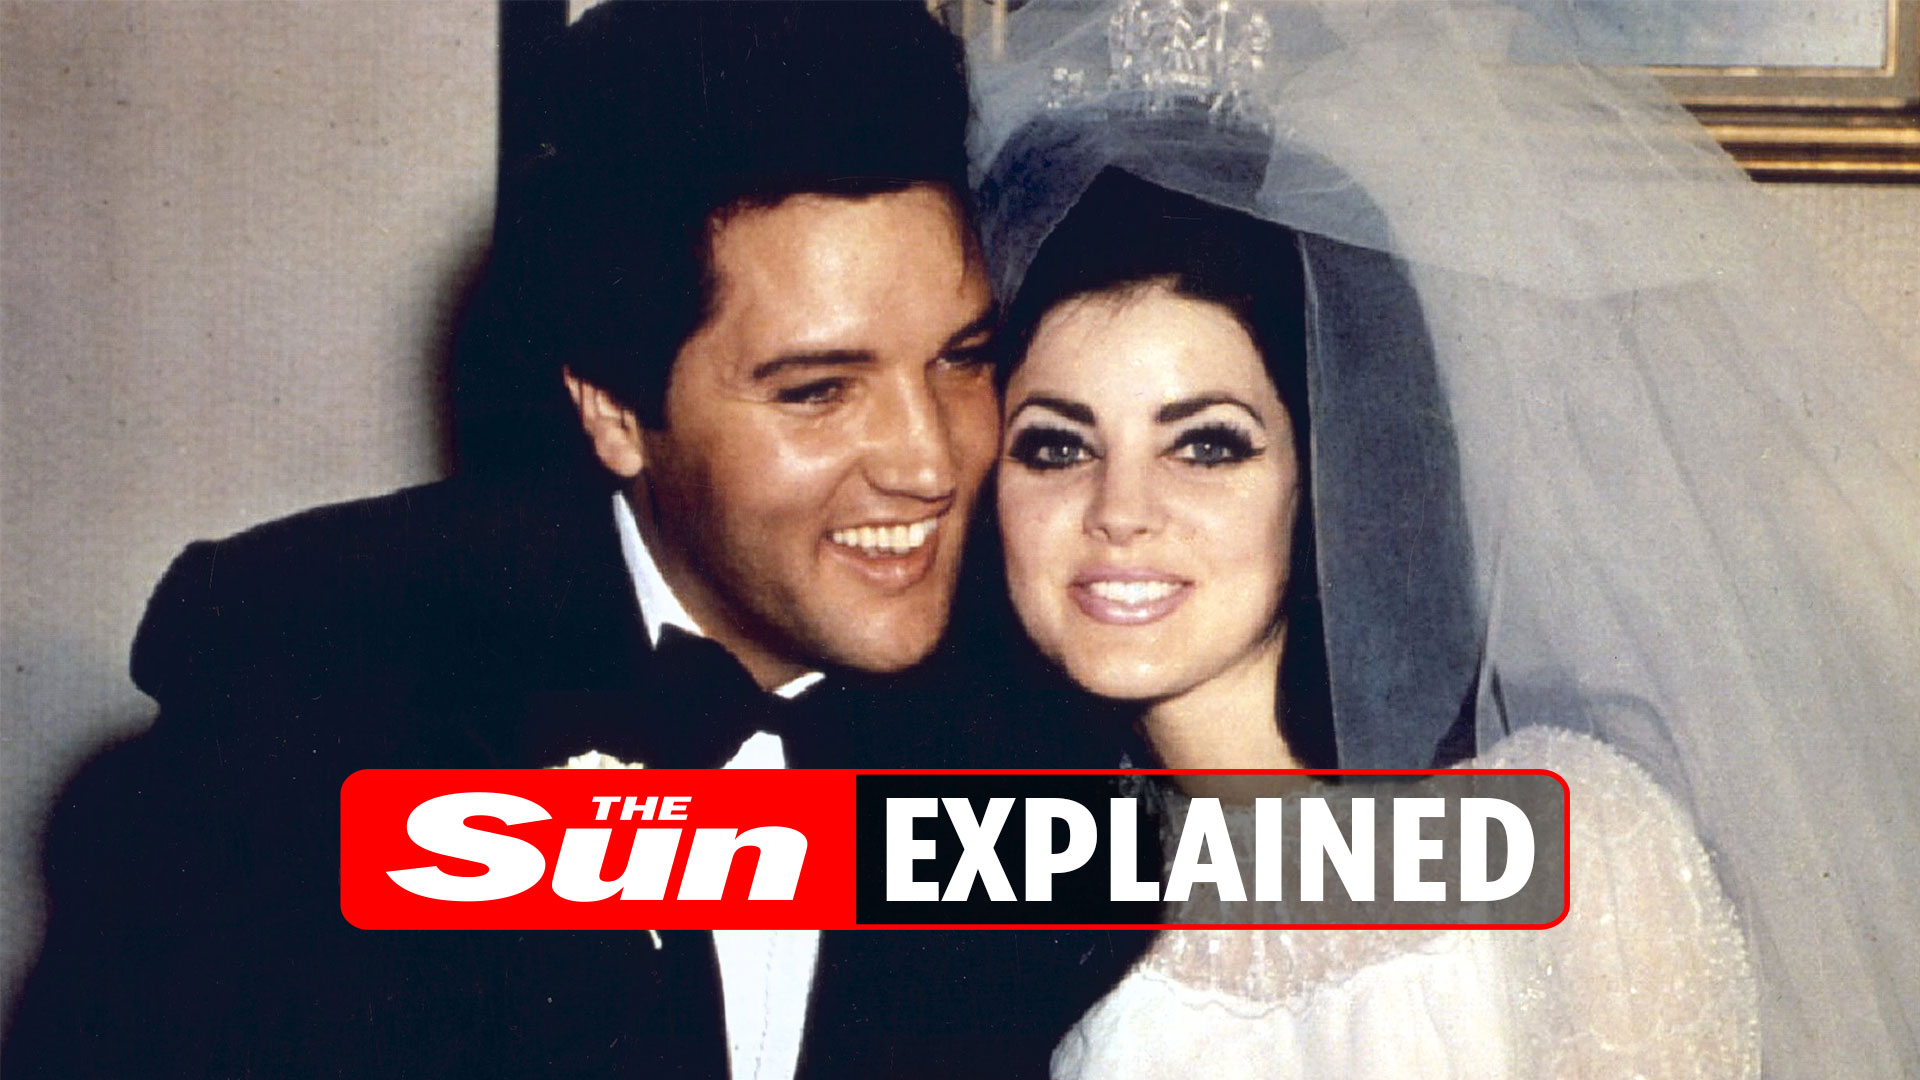 How old was Priscilla Presley when she met Elvis?